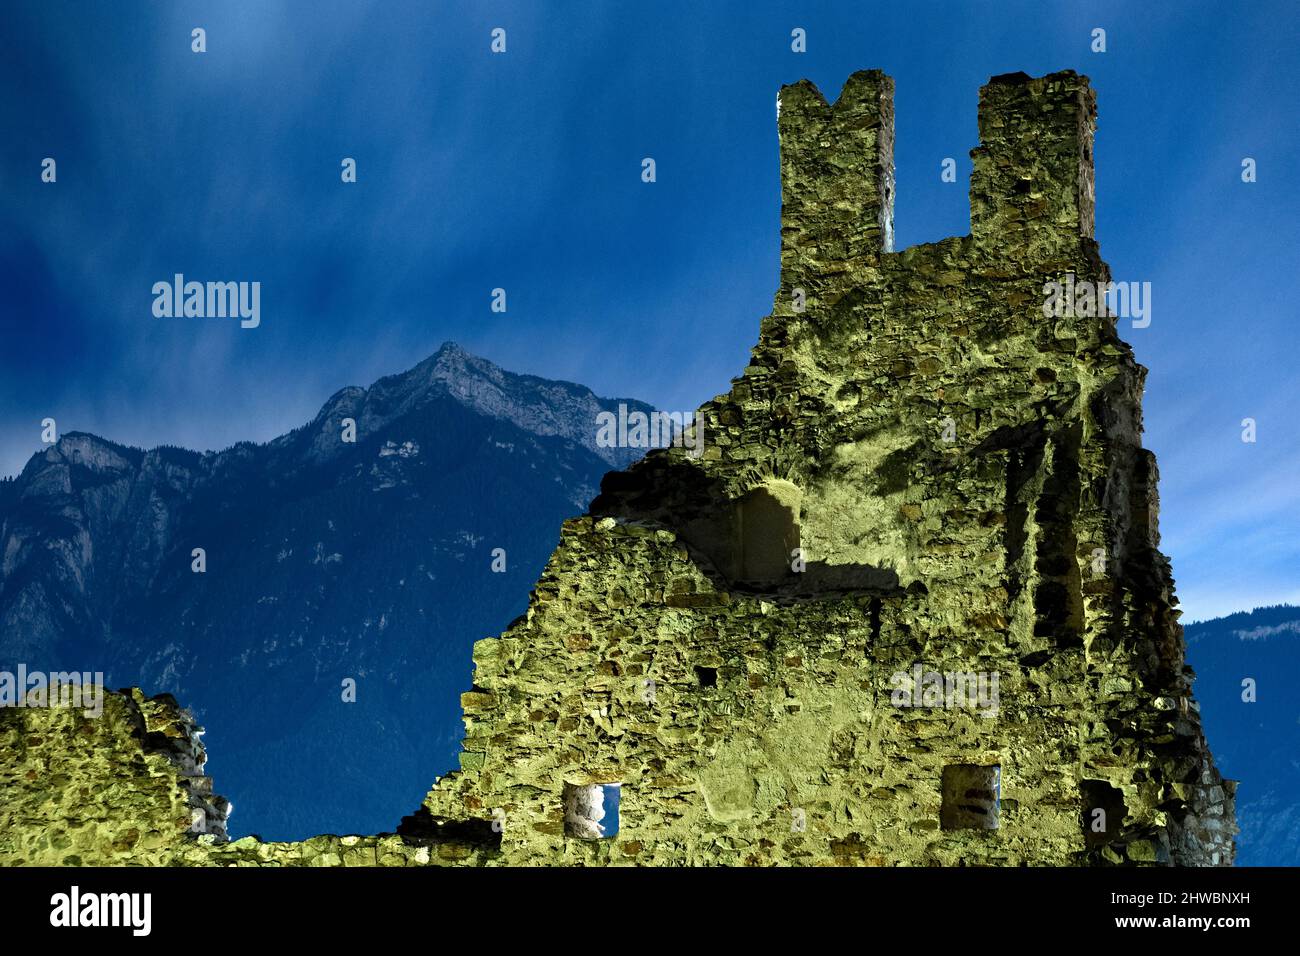 Le spudorose rovine del Castello di Selva e del Monte cima Vezzena in inverno. Levico Terme, provincia di Trento, Trentino Alto Adige, Italia, Europa. Foto Stock